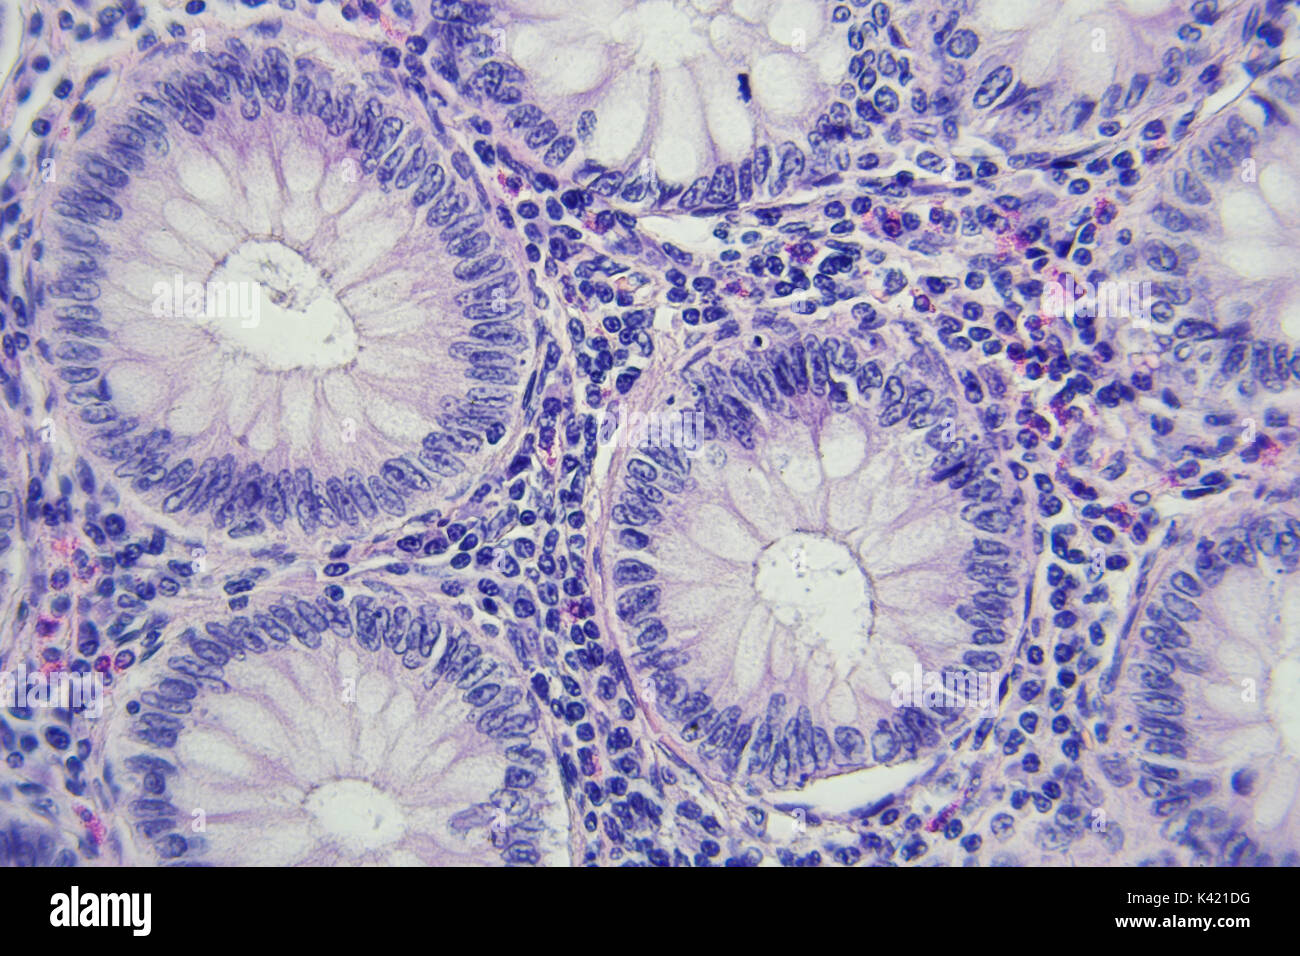 La photographie microscopique du cancer du côlon, grossissement x400 Banque D'Images